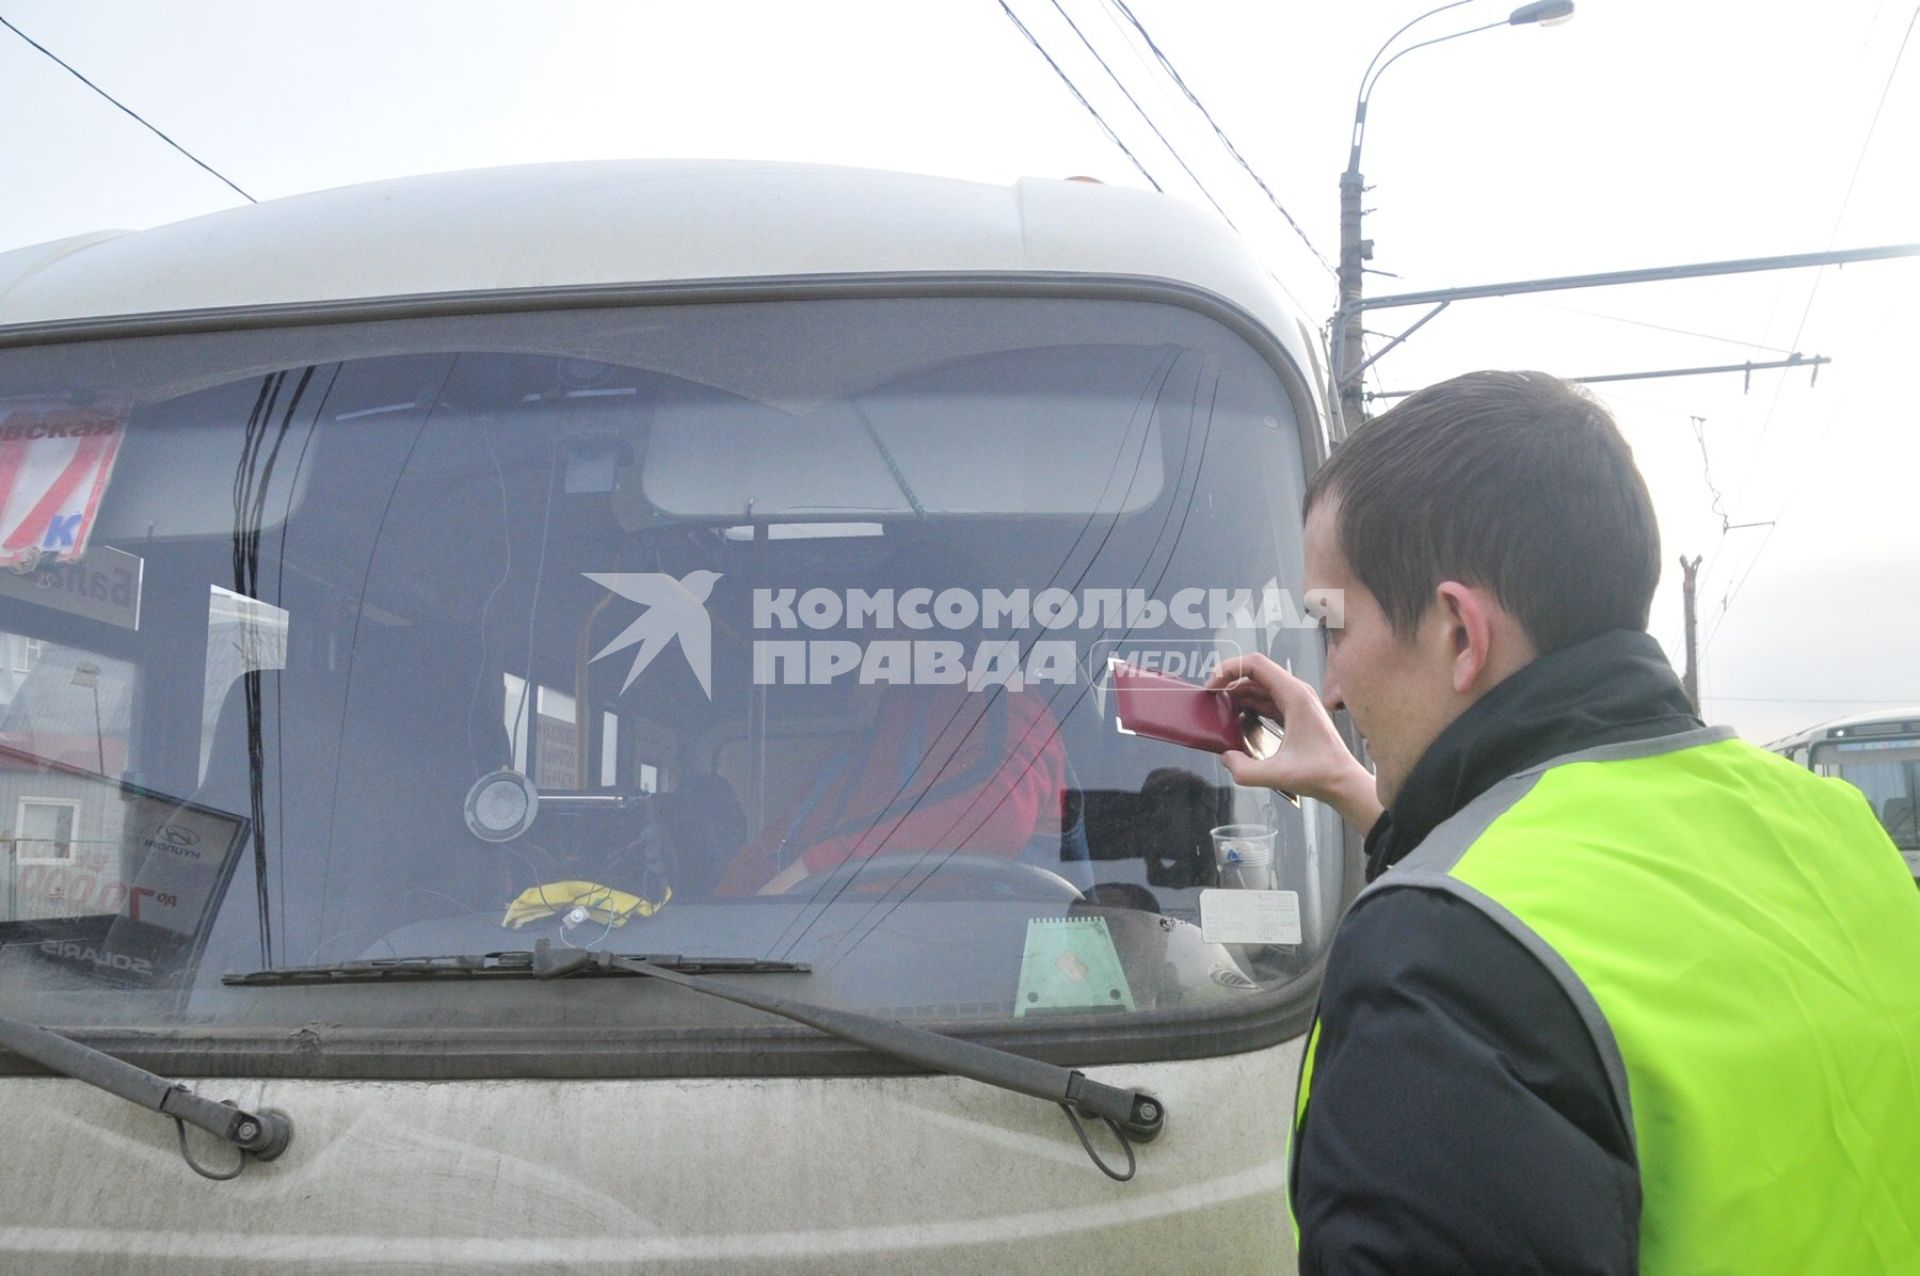 Сотрудники Госавтоинспекции совместно с ФМС провели рейд по выявлению незаконных маршрутных такси.